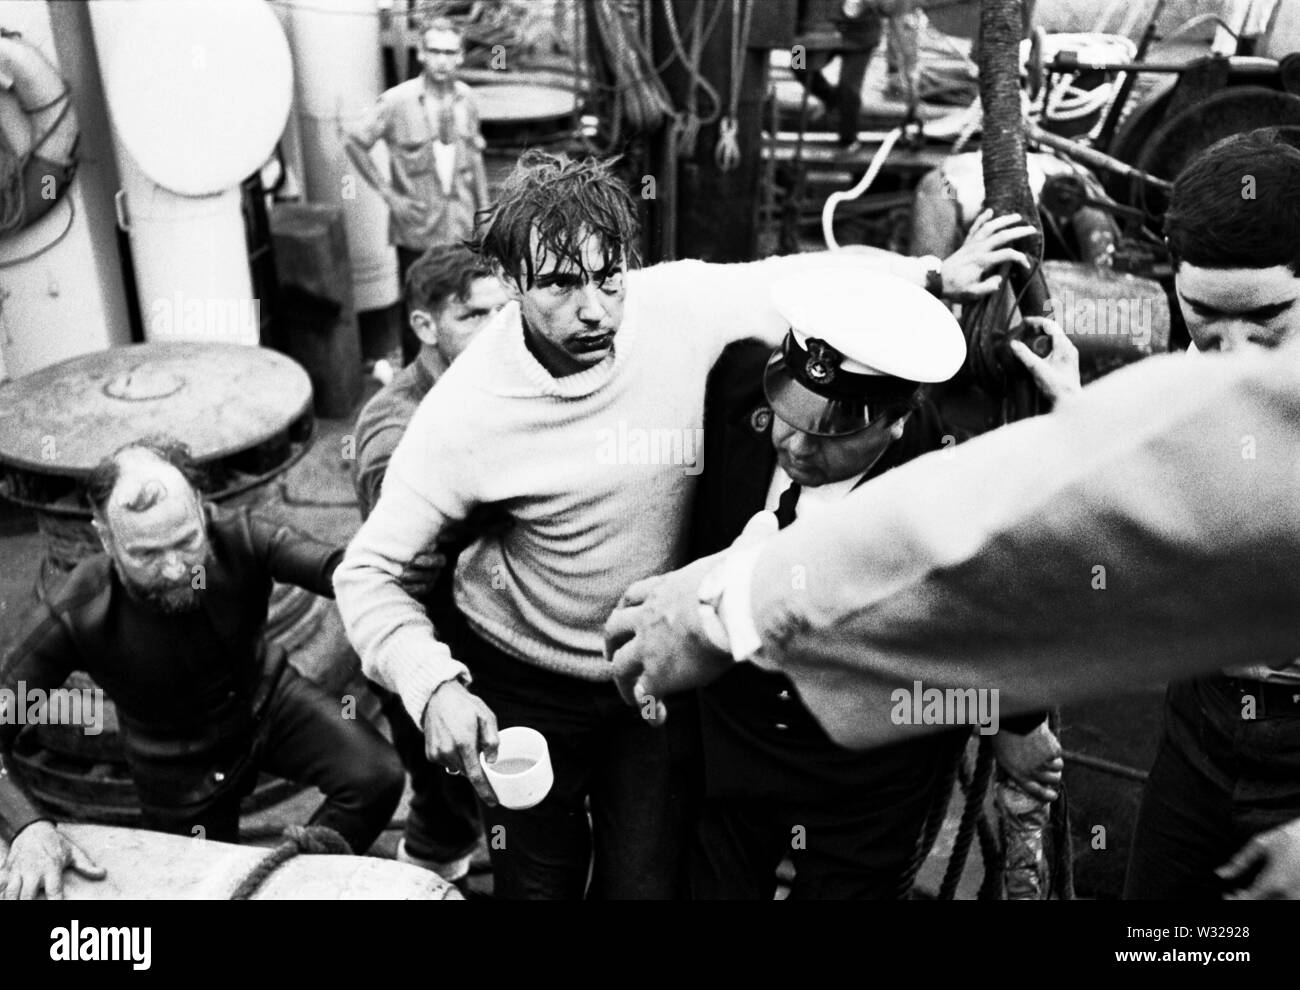 AJAXNETPHOTO. 03 luglio, 1971. GOSPORT, Inghilterra. - ROBERT CROXON, uno dei tre membri di equipaggio intrappolati nel sottomarino HMS ARTEMIS quando è affondato a fianco della banchina HMS DOLPHIN 2ND LUGLIO,1972, è aiutato a terra. Tutti e tre gli equipaggi sono state correttamente salvato dalla nave affondata. Foto:JONATHAN EASTLAND/AJAX. REF:ARTEMIS 1971 2 Foto Stock